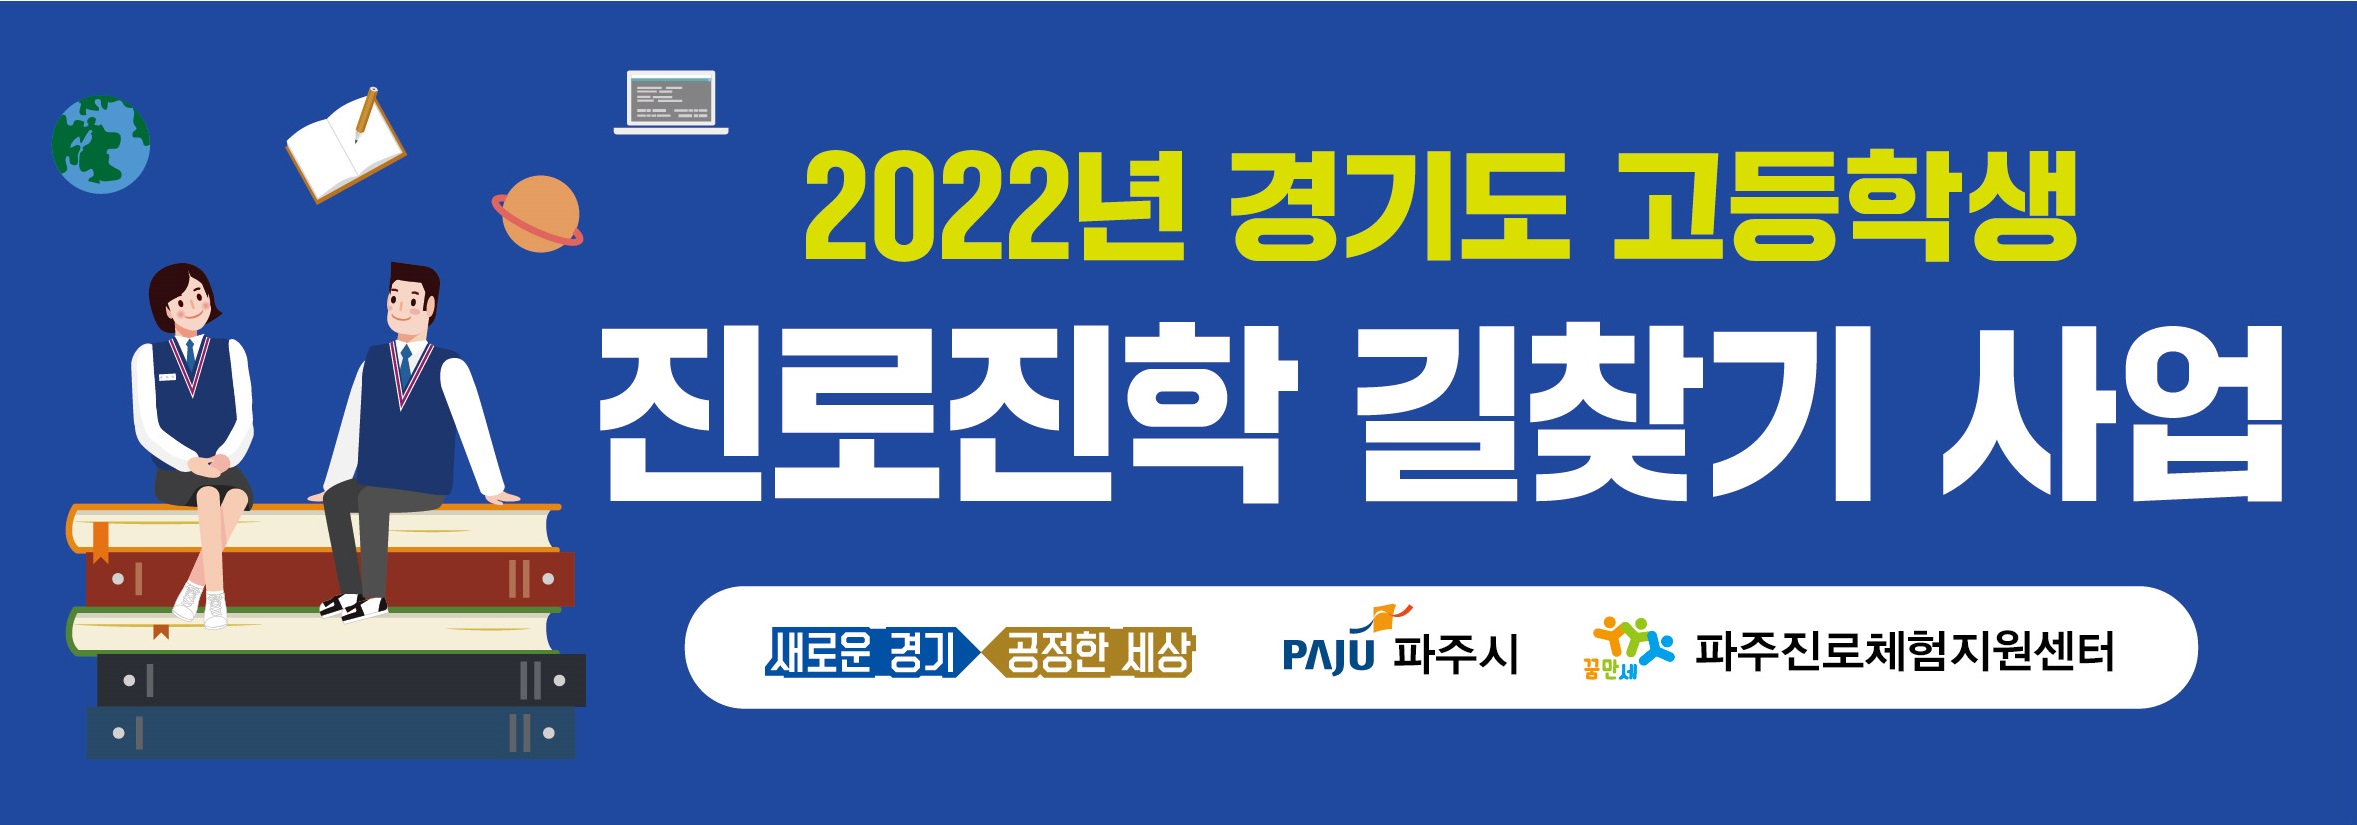 2022년 경기도 고등학생 진로진학 길찾기 사업